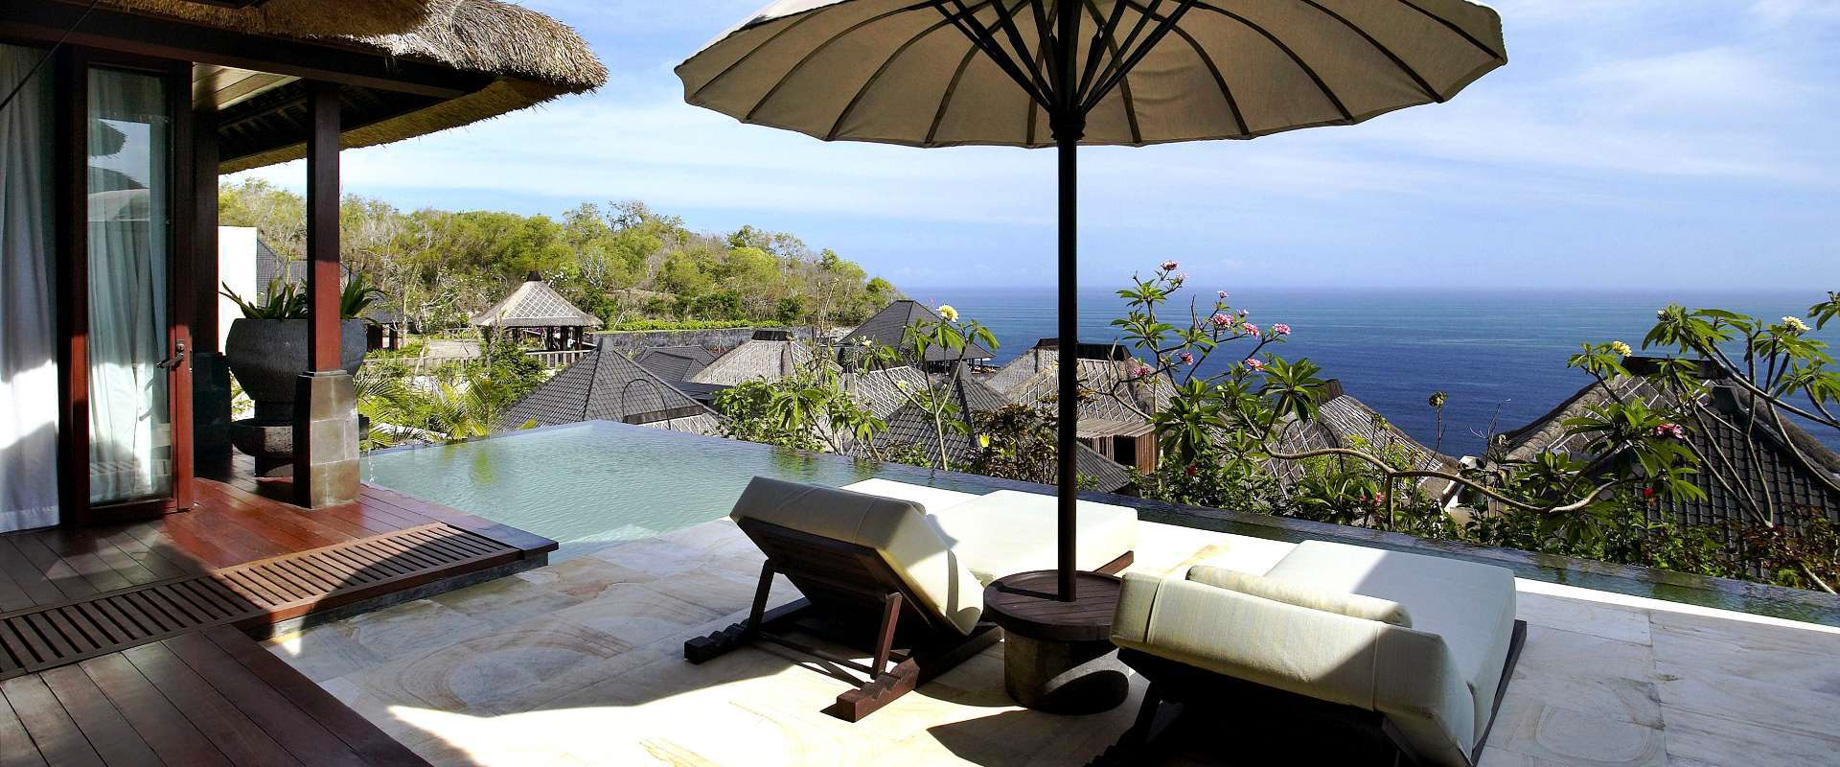 Bvlgari Resort Bali - Uluwatu, Bali, Indonesia - Ocean View Villa Pool Deck